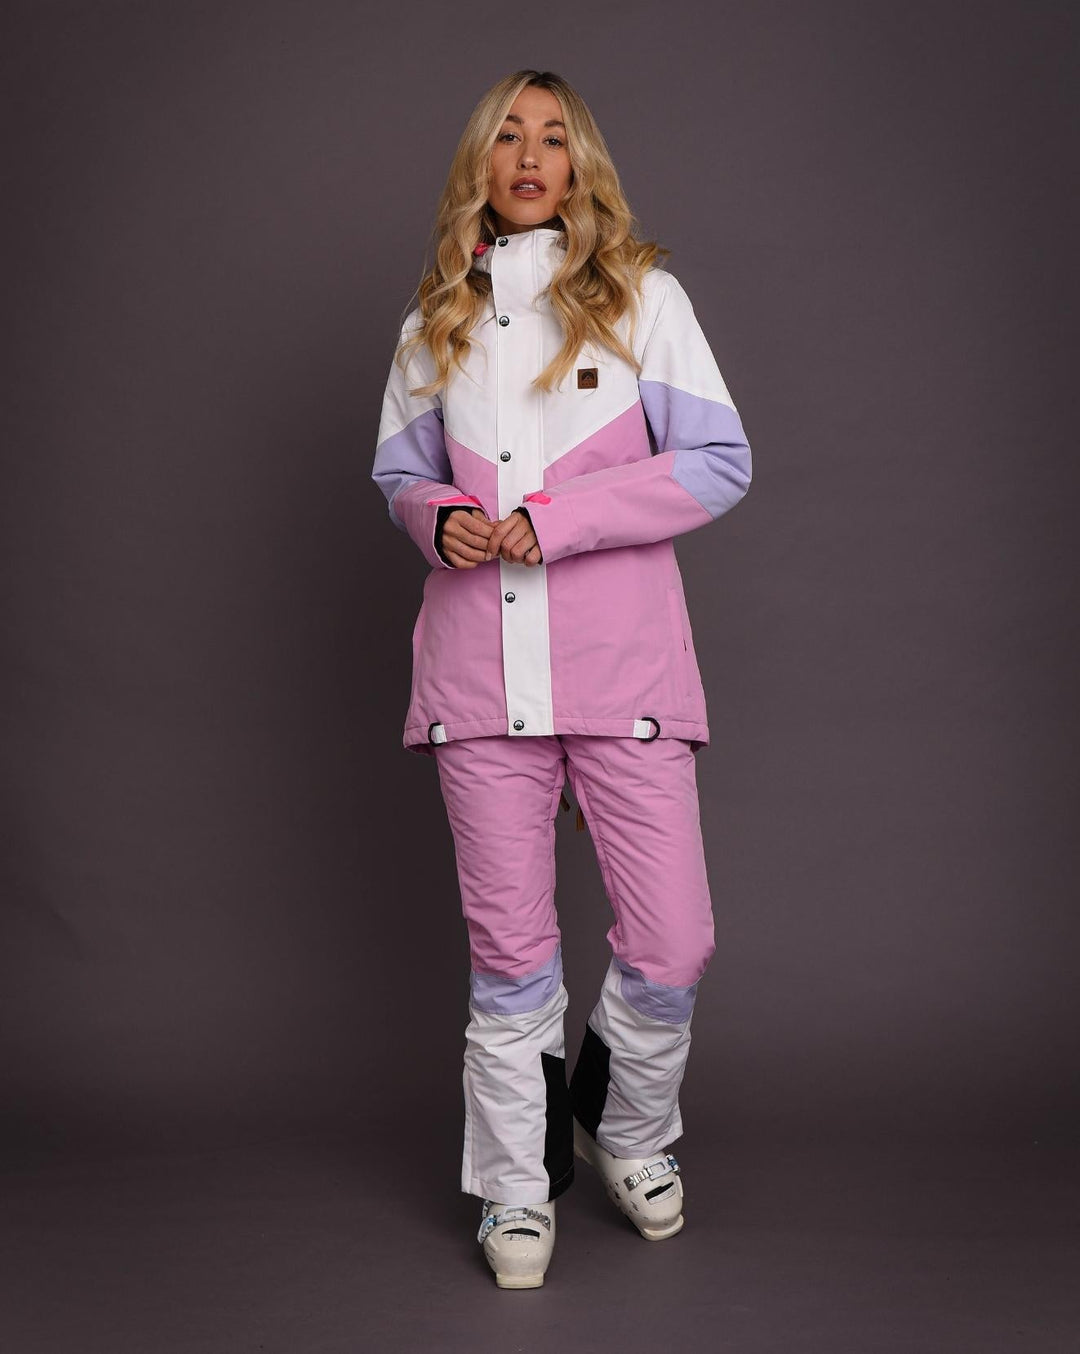 1080 Women's Ski & Snowboard Jacket - Pastel Pink, White & Pastel Purp –  OOSC Clothing - USA